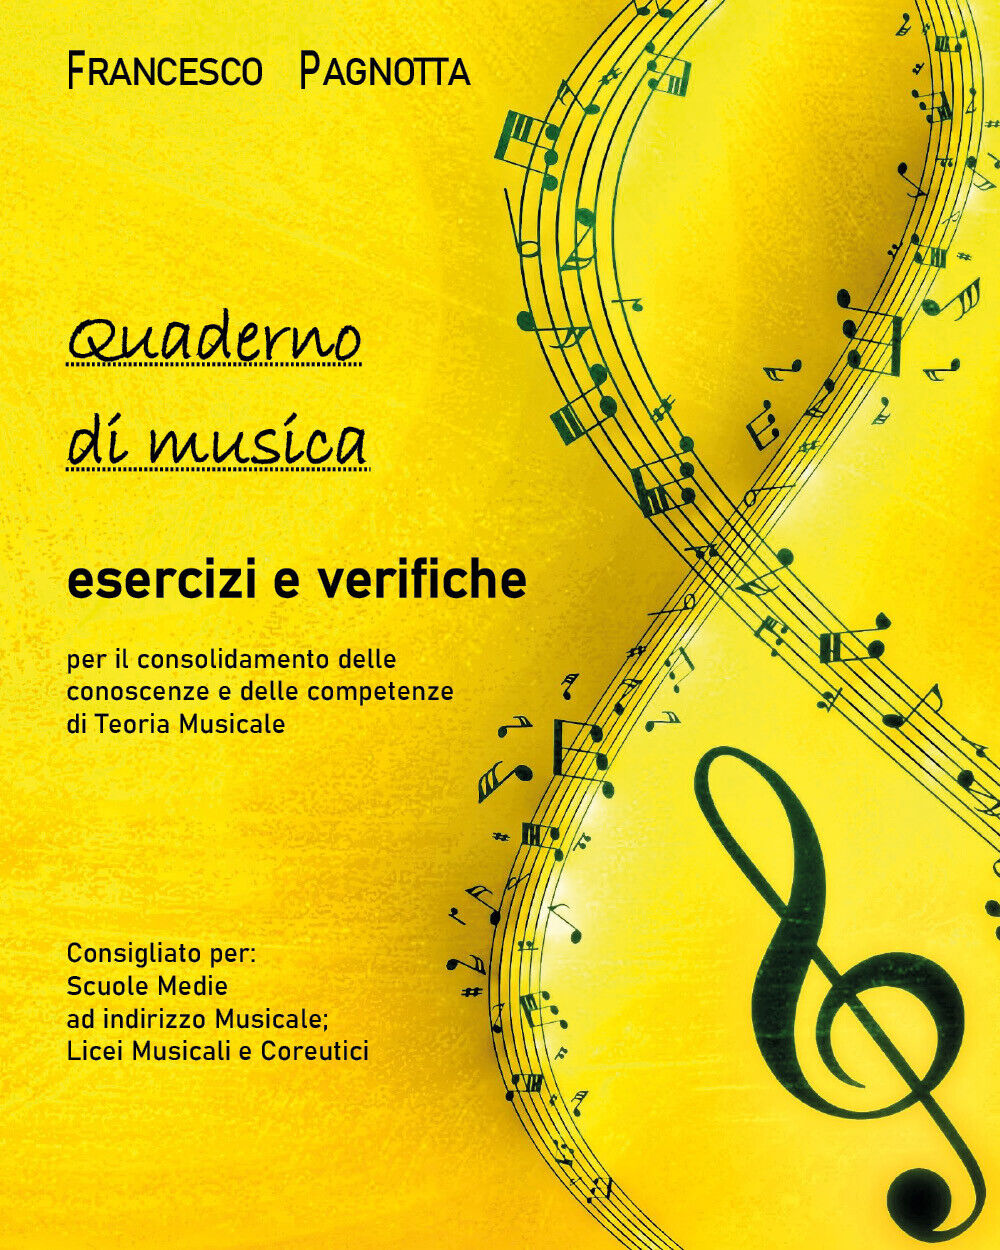 Quaderno di musica: esercizi e verifiche di Francesco Pagnotta,  2021,  Youcanpr libro usato